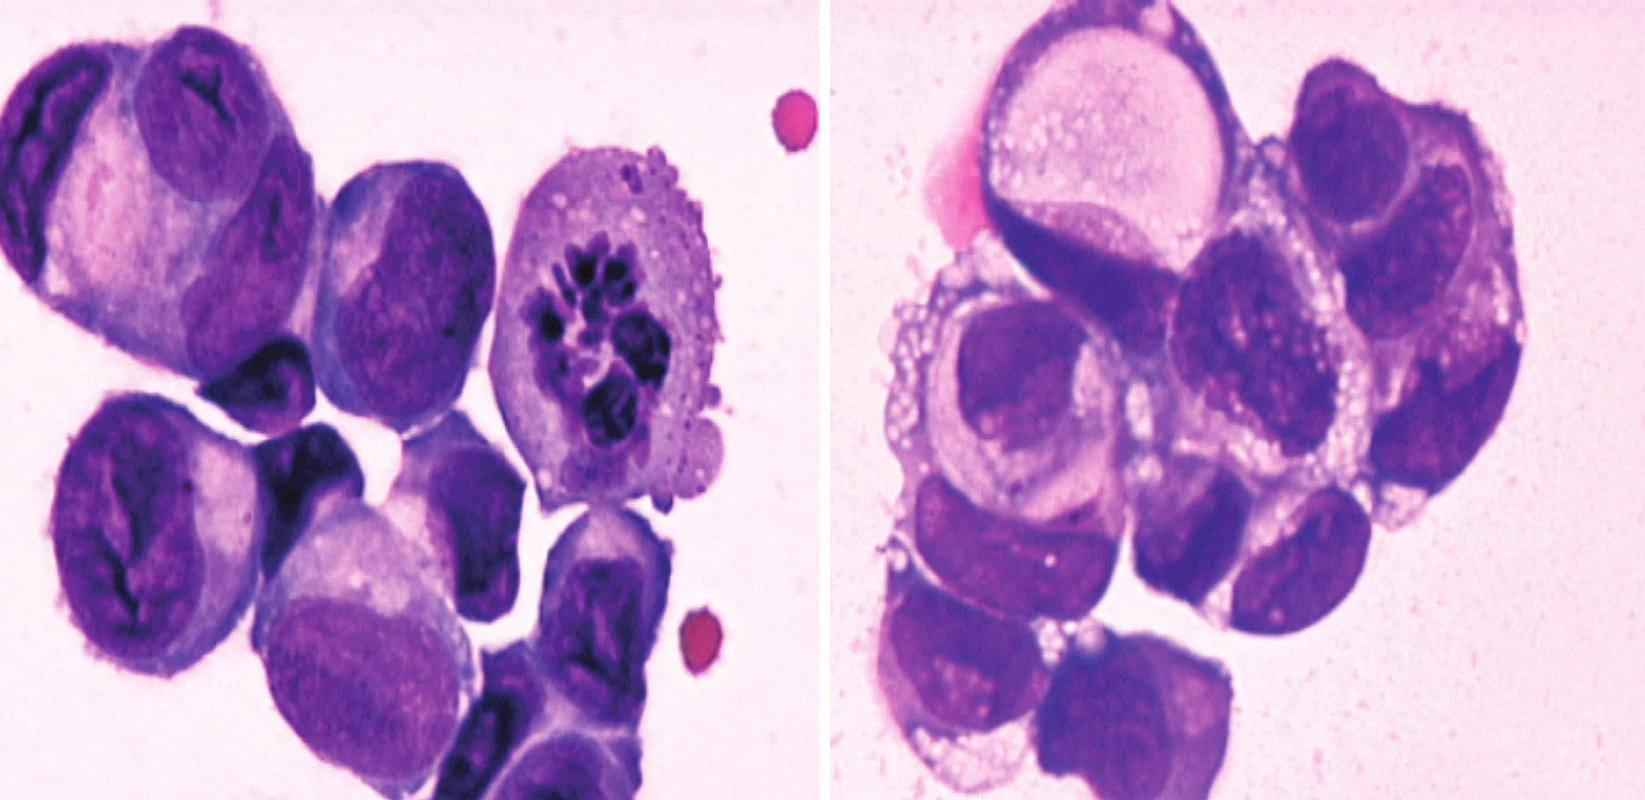 a) Shluk velkých epiteliálních nádorových buněk v mozkomíšním moku (barvení May-Grünwald-Giemsa). b) Shluk nádorových buněk v mozkomíšním moku s vakuolizací cytoplazmy (tzv. buňky tvaru pečetního prstenu)  iagnostické pro adenokarcinom (archiv autora).